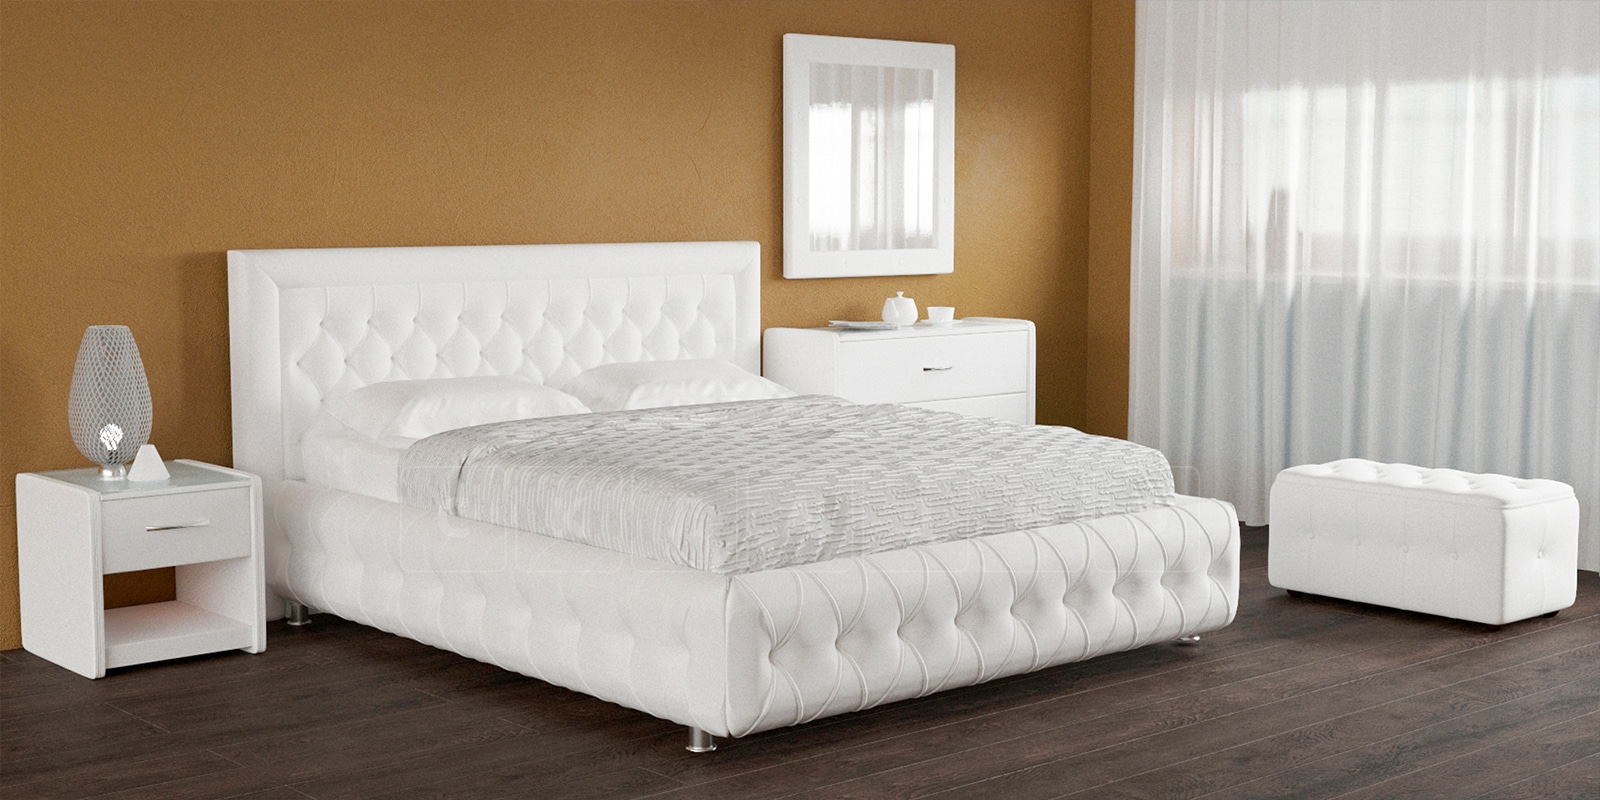 Мягкая кровать Малибу 160 см экокожа белого цвета вариант 7 фото 5 | интернет-магазин Складно